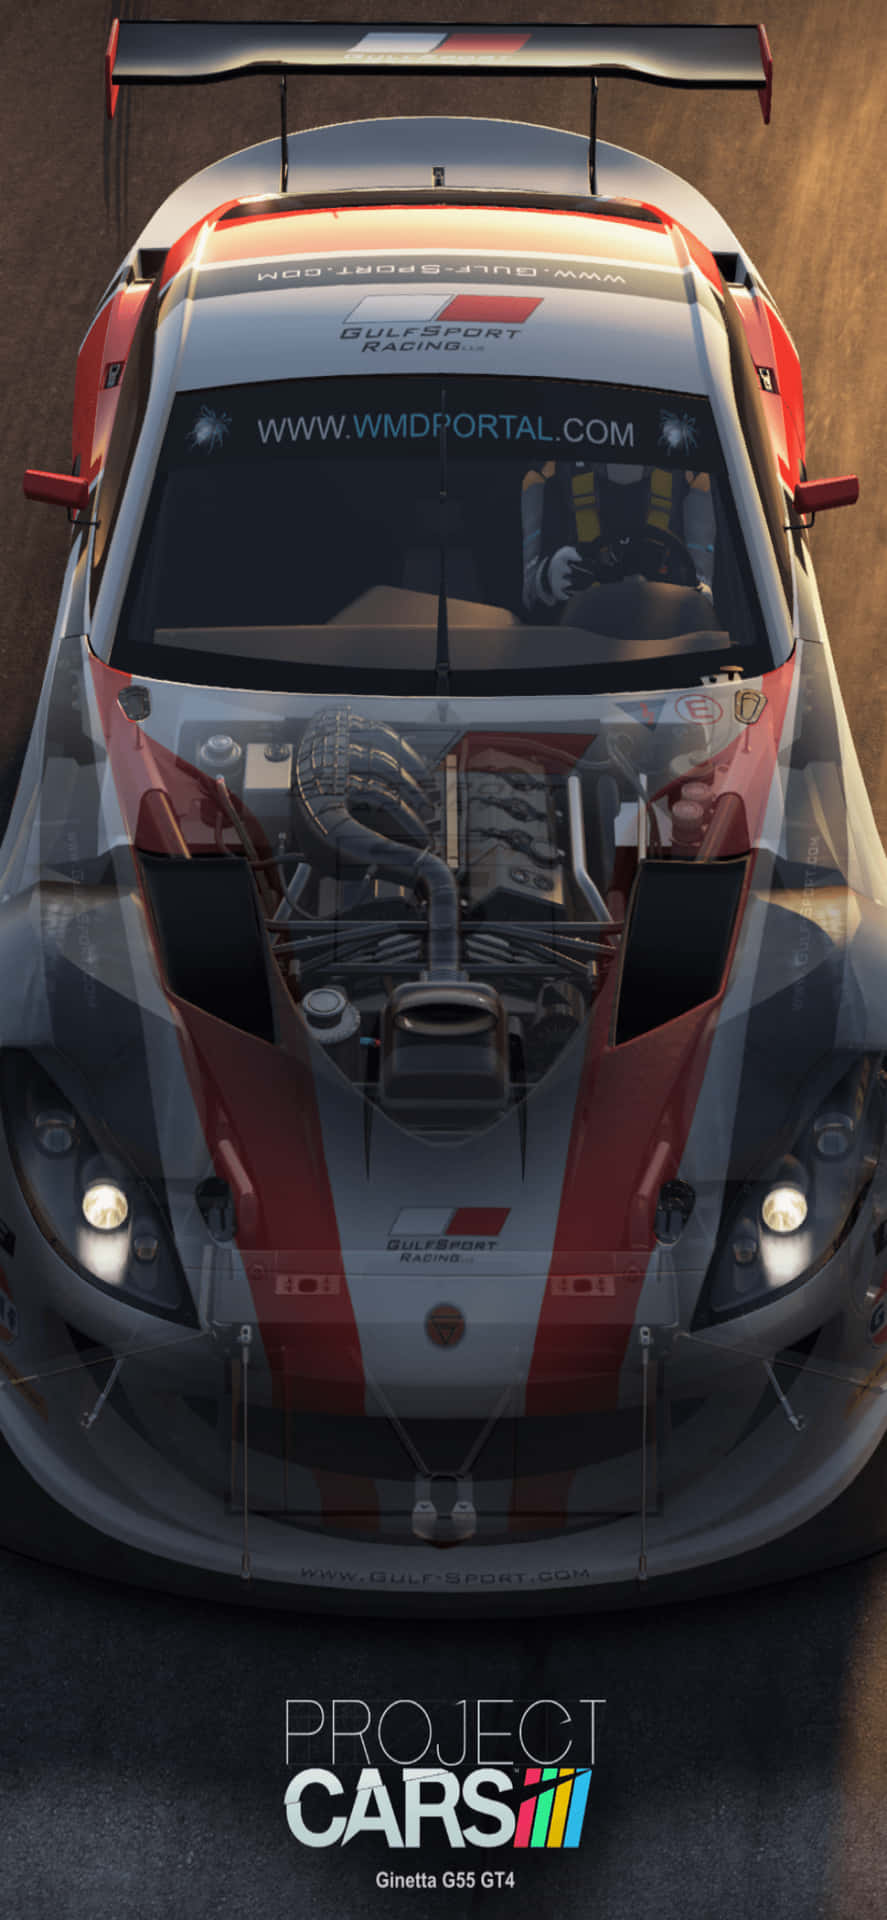 Iphonex Bakgrundsbild Med Grått Project Cars Motiv Med Röda Ränder Och Aston Martin V8.